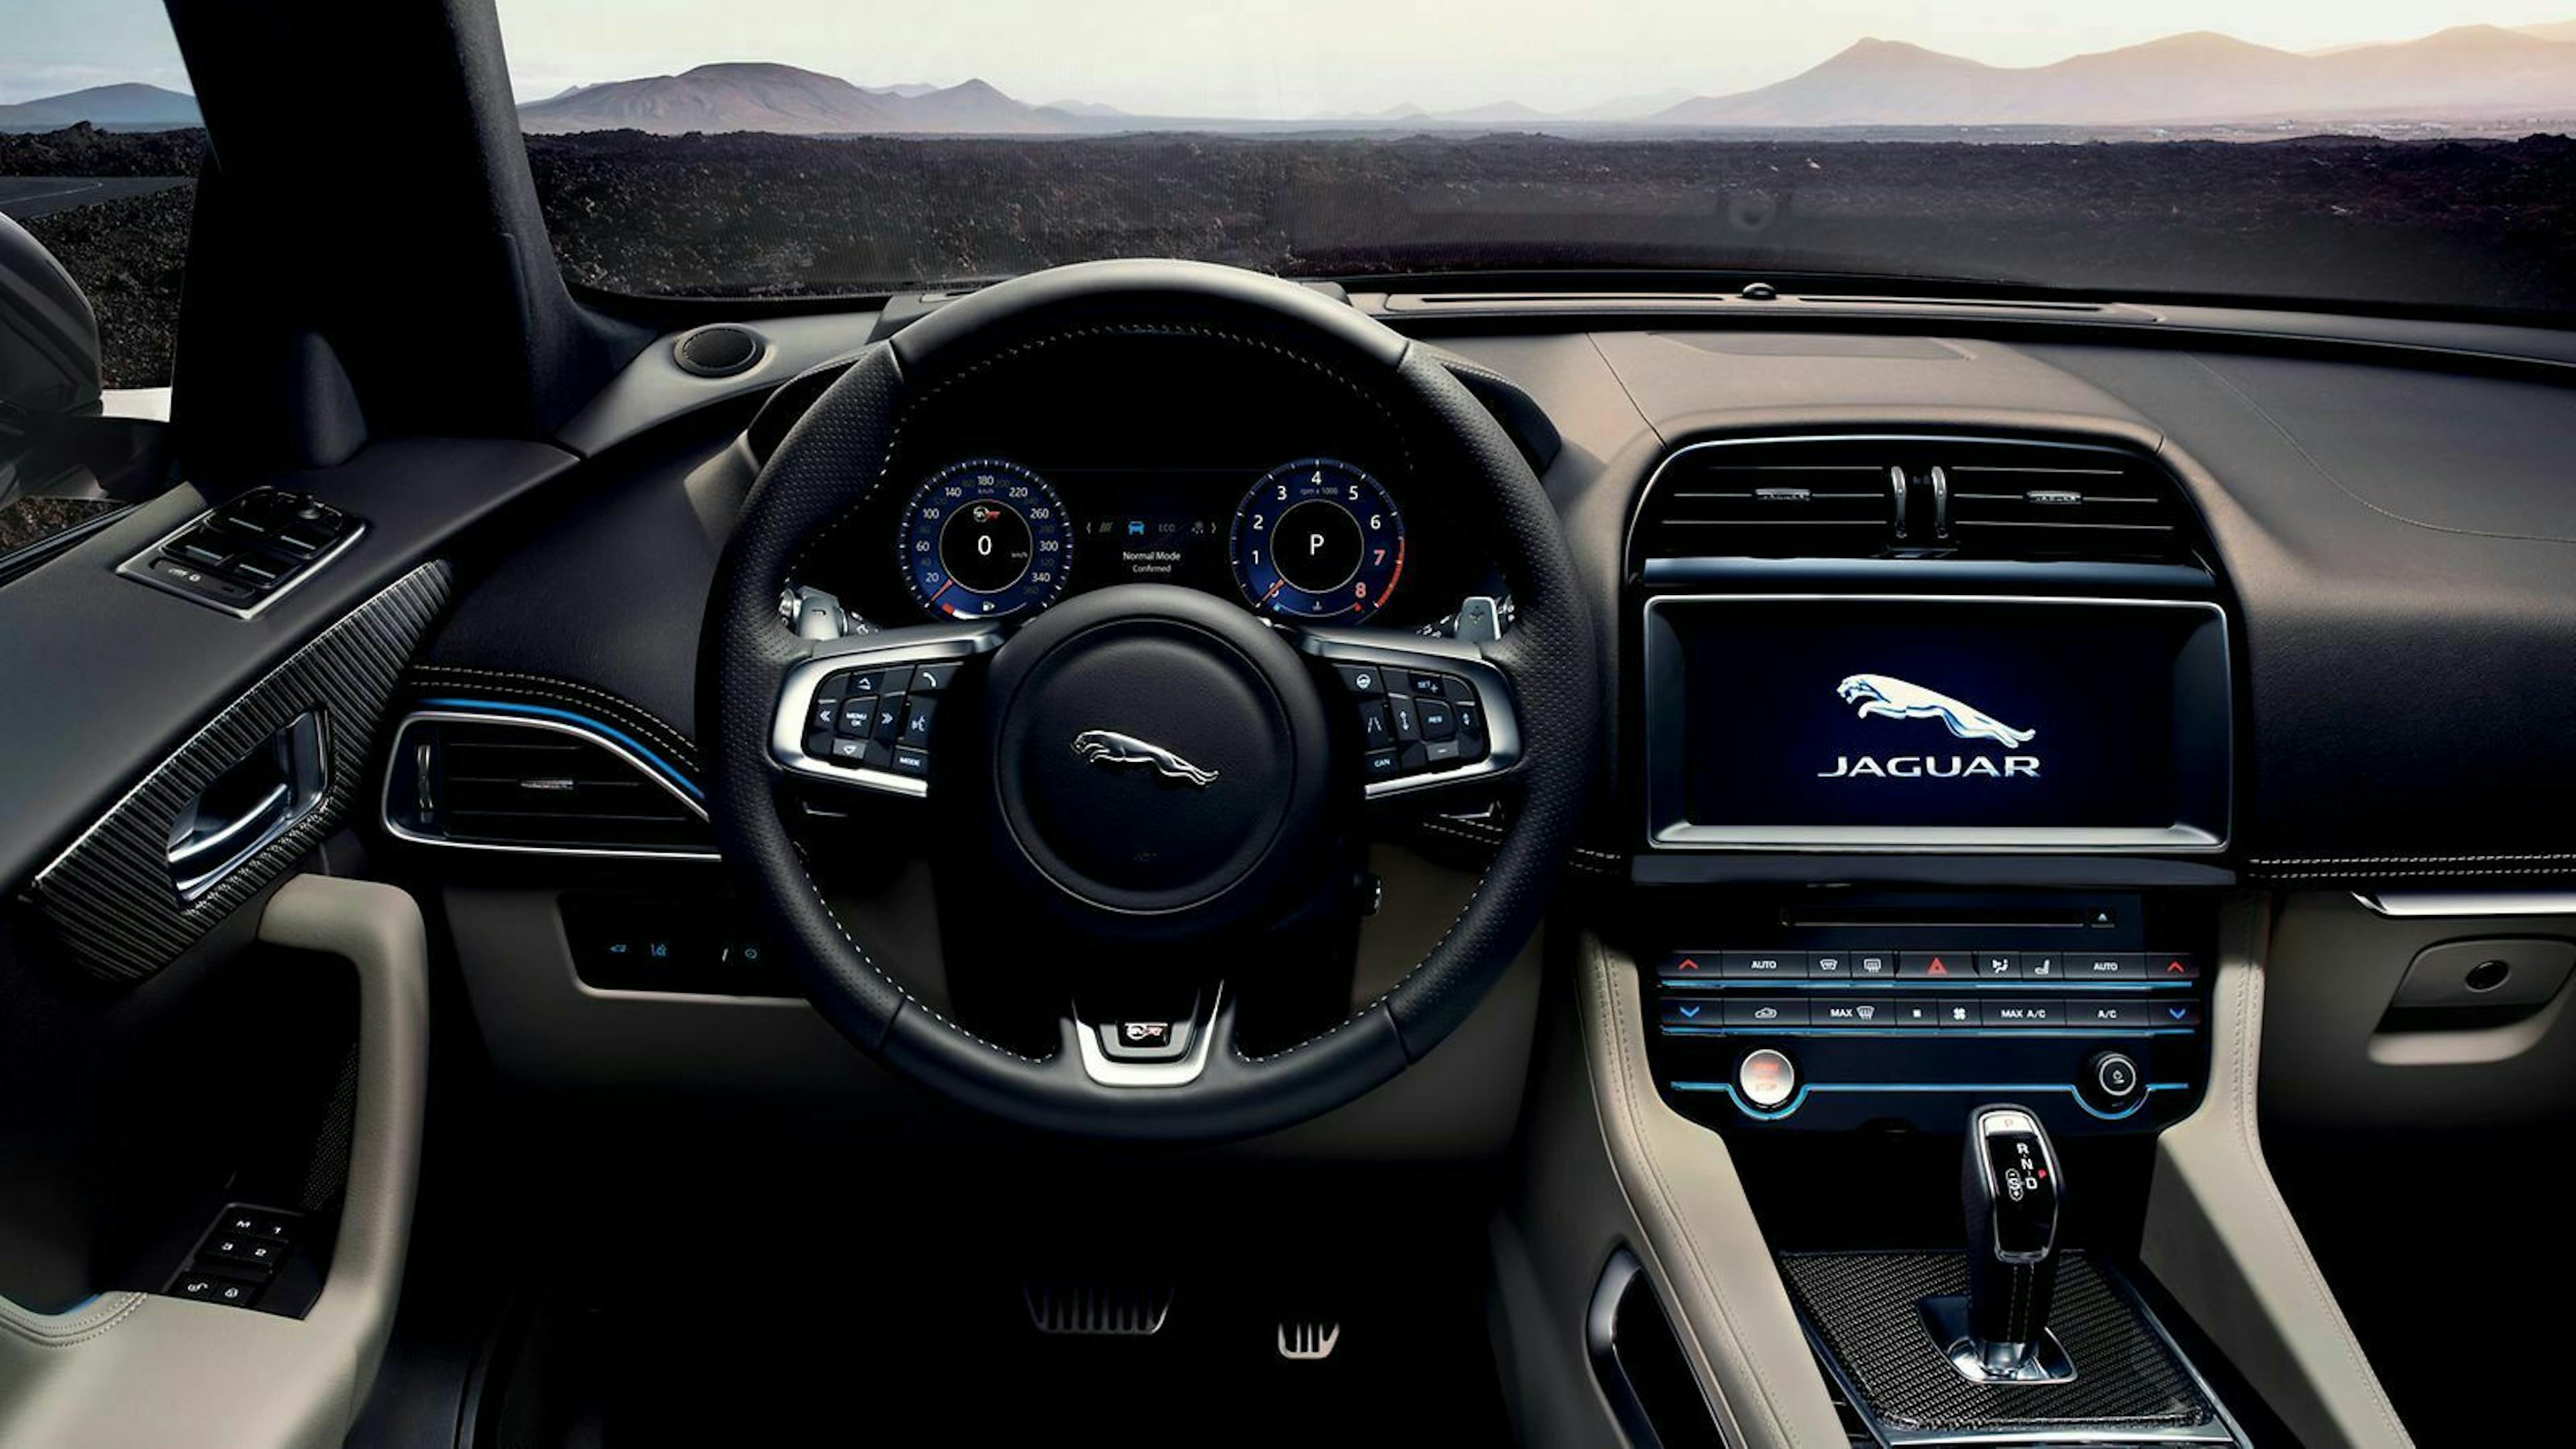 Im Innenraum achtet Jaguar auf Qualität. Hartplastik ist hier nicht zu finden